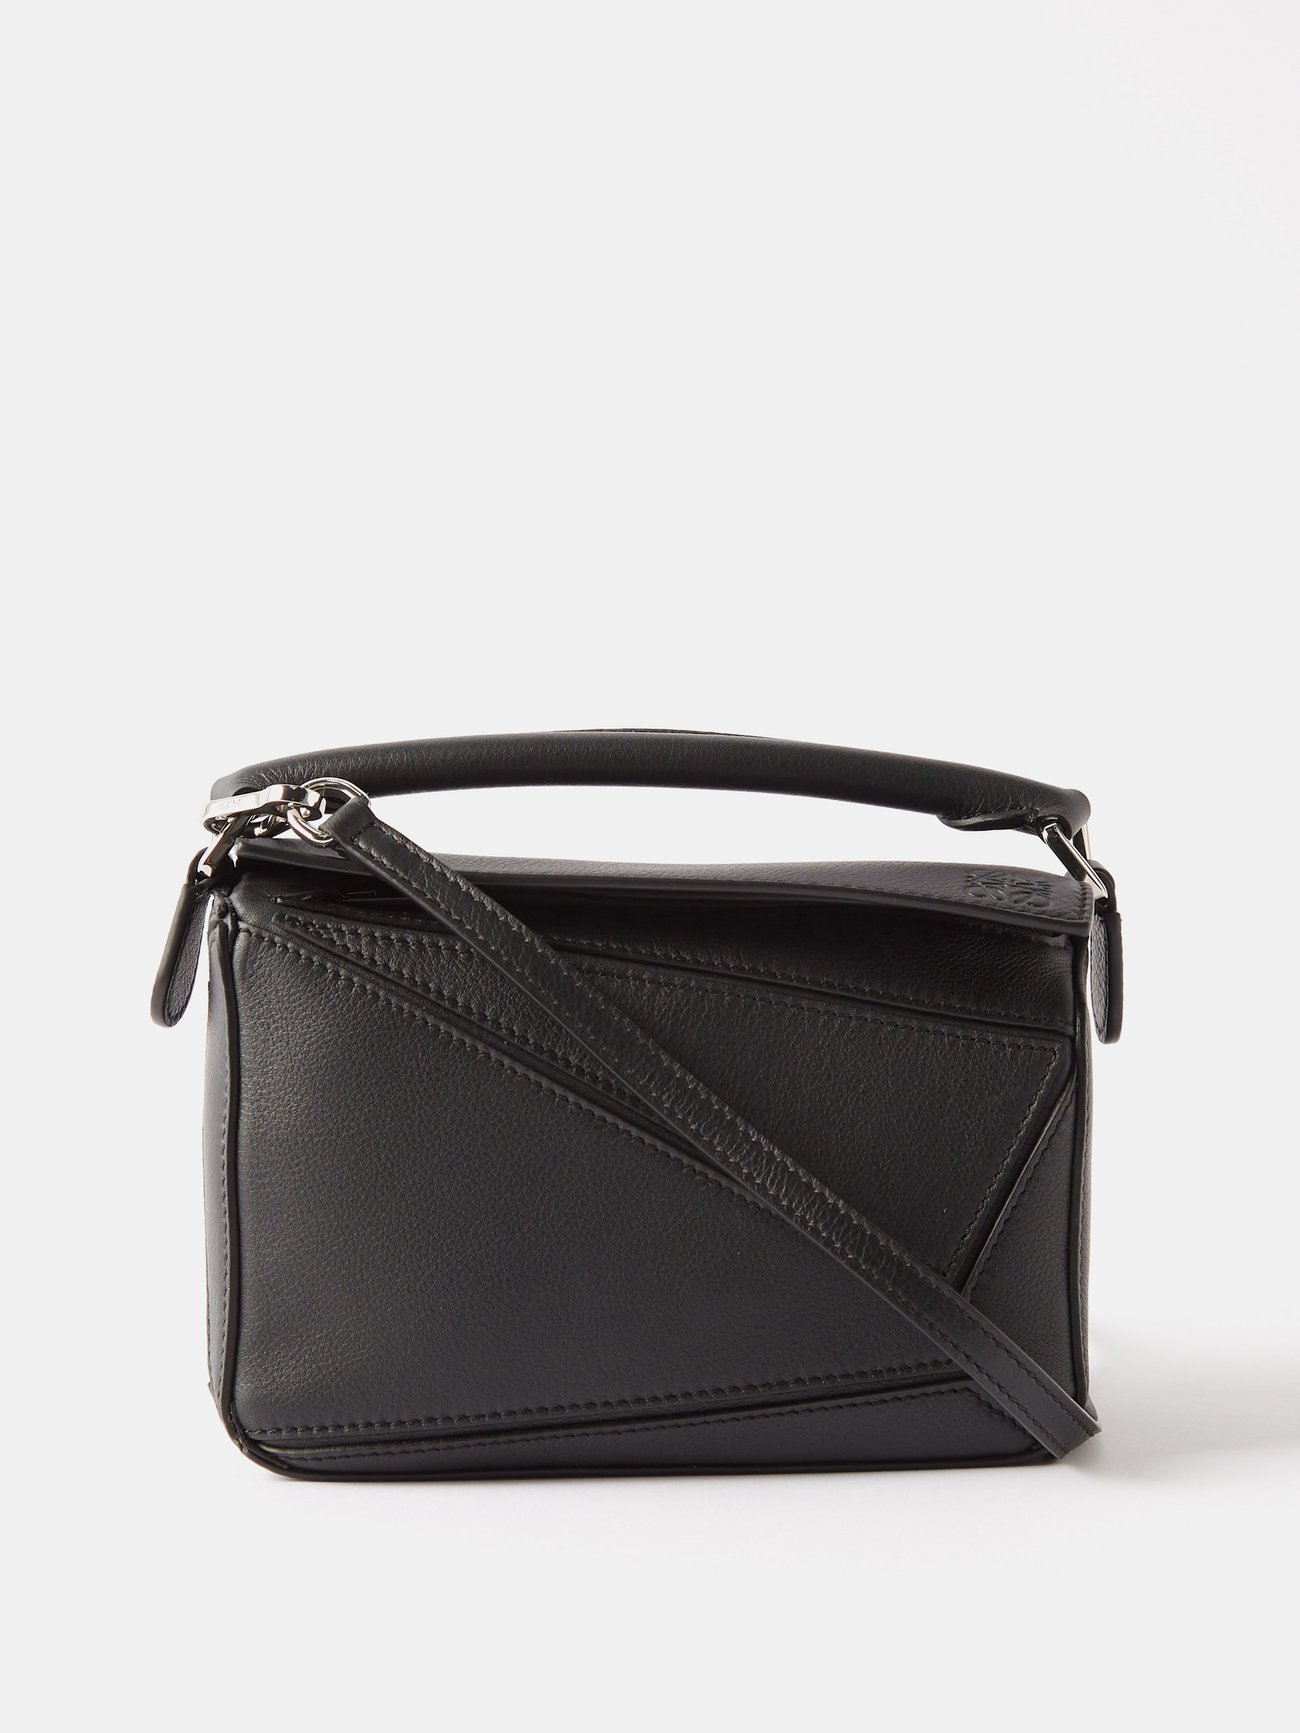 Black Puzzle mini leather cross-body bag | LOEWE | MATCHESFASHION UK